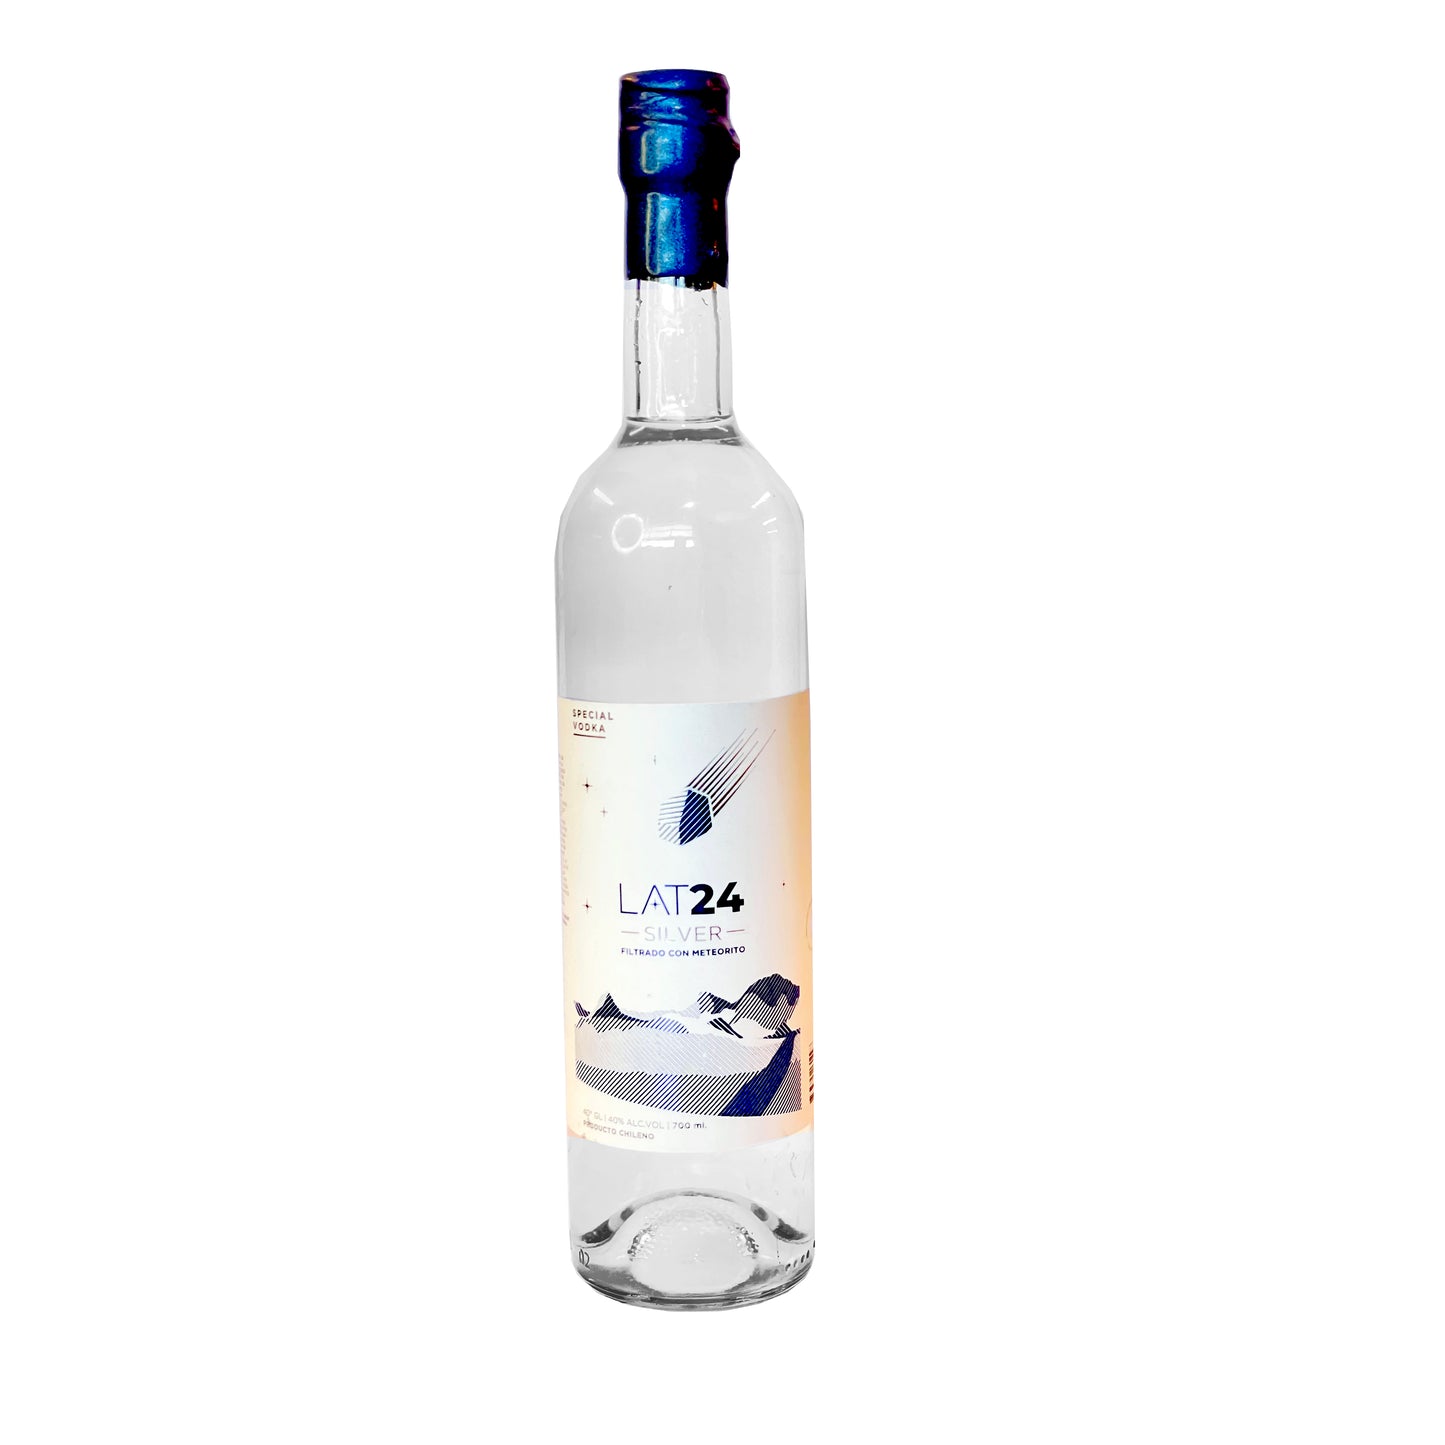 Vodka LAT24 Silver